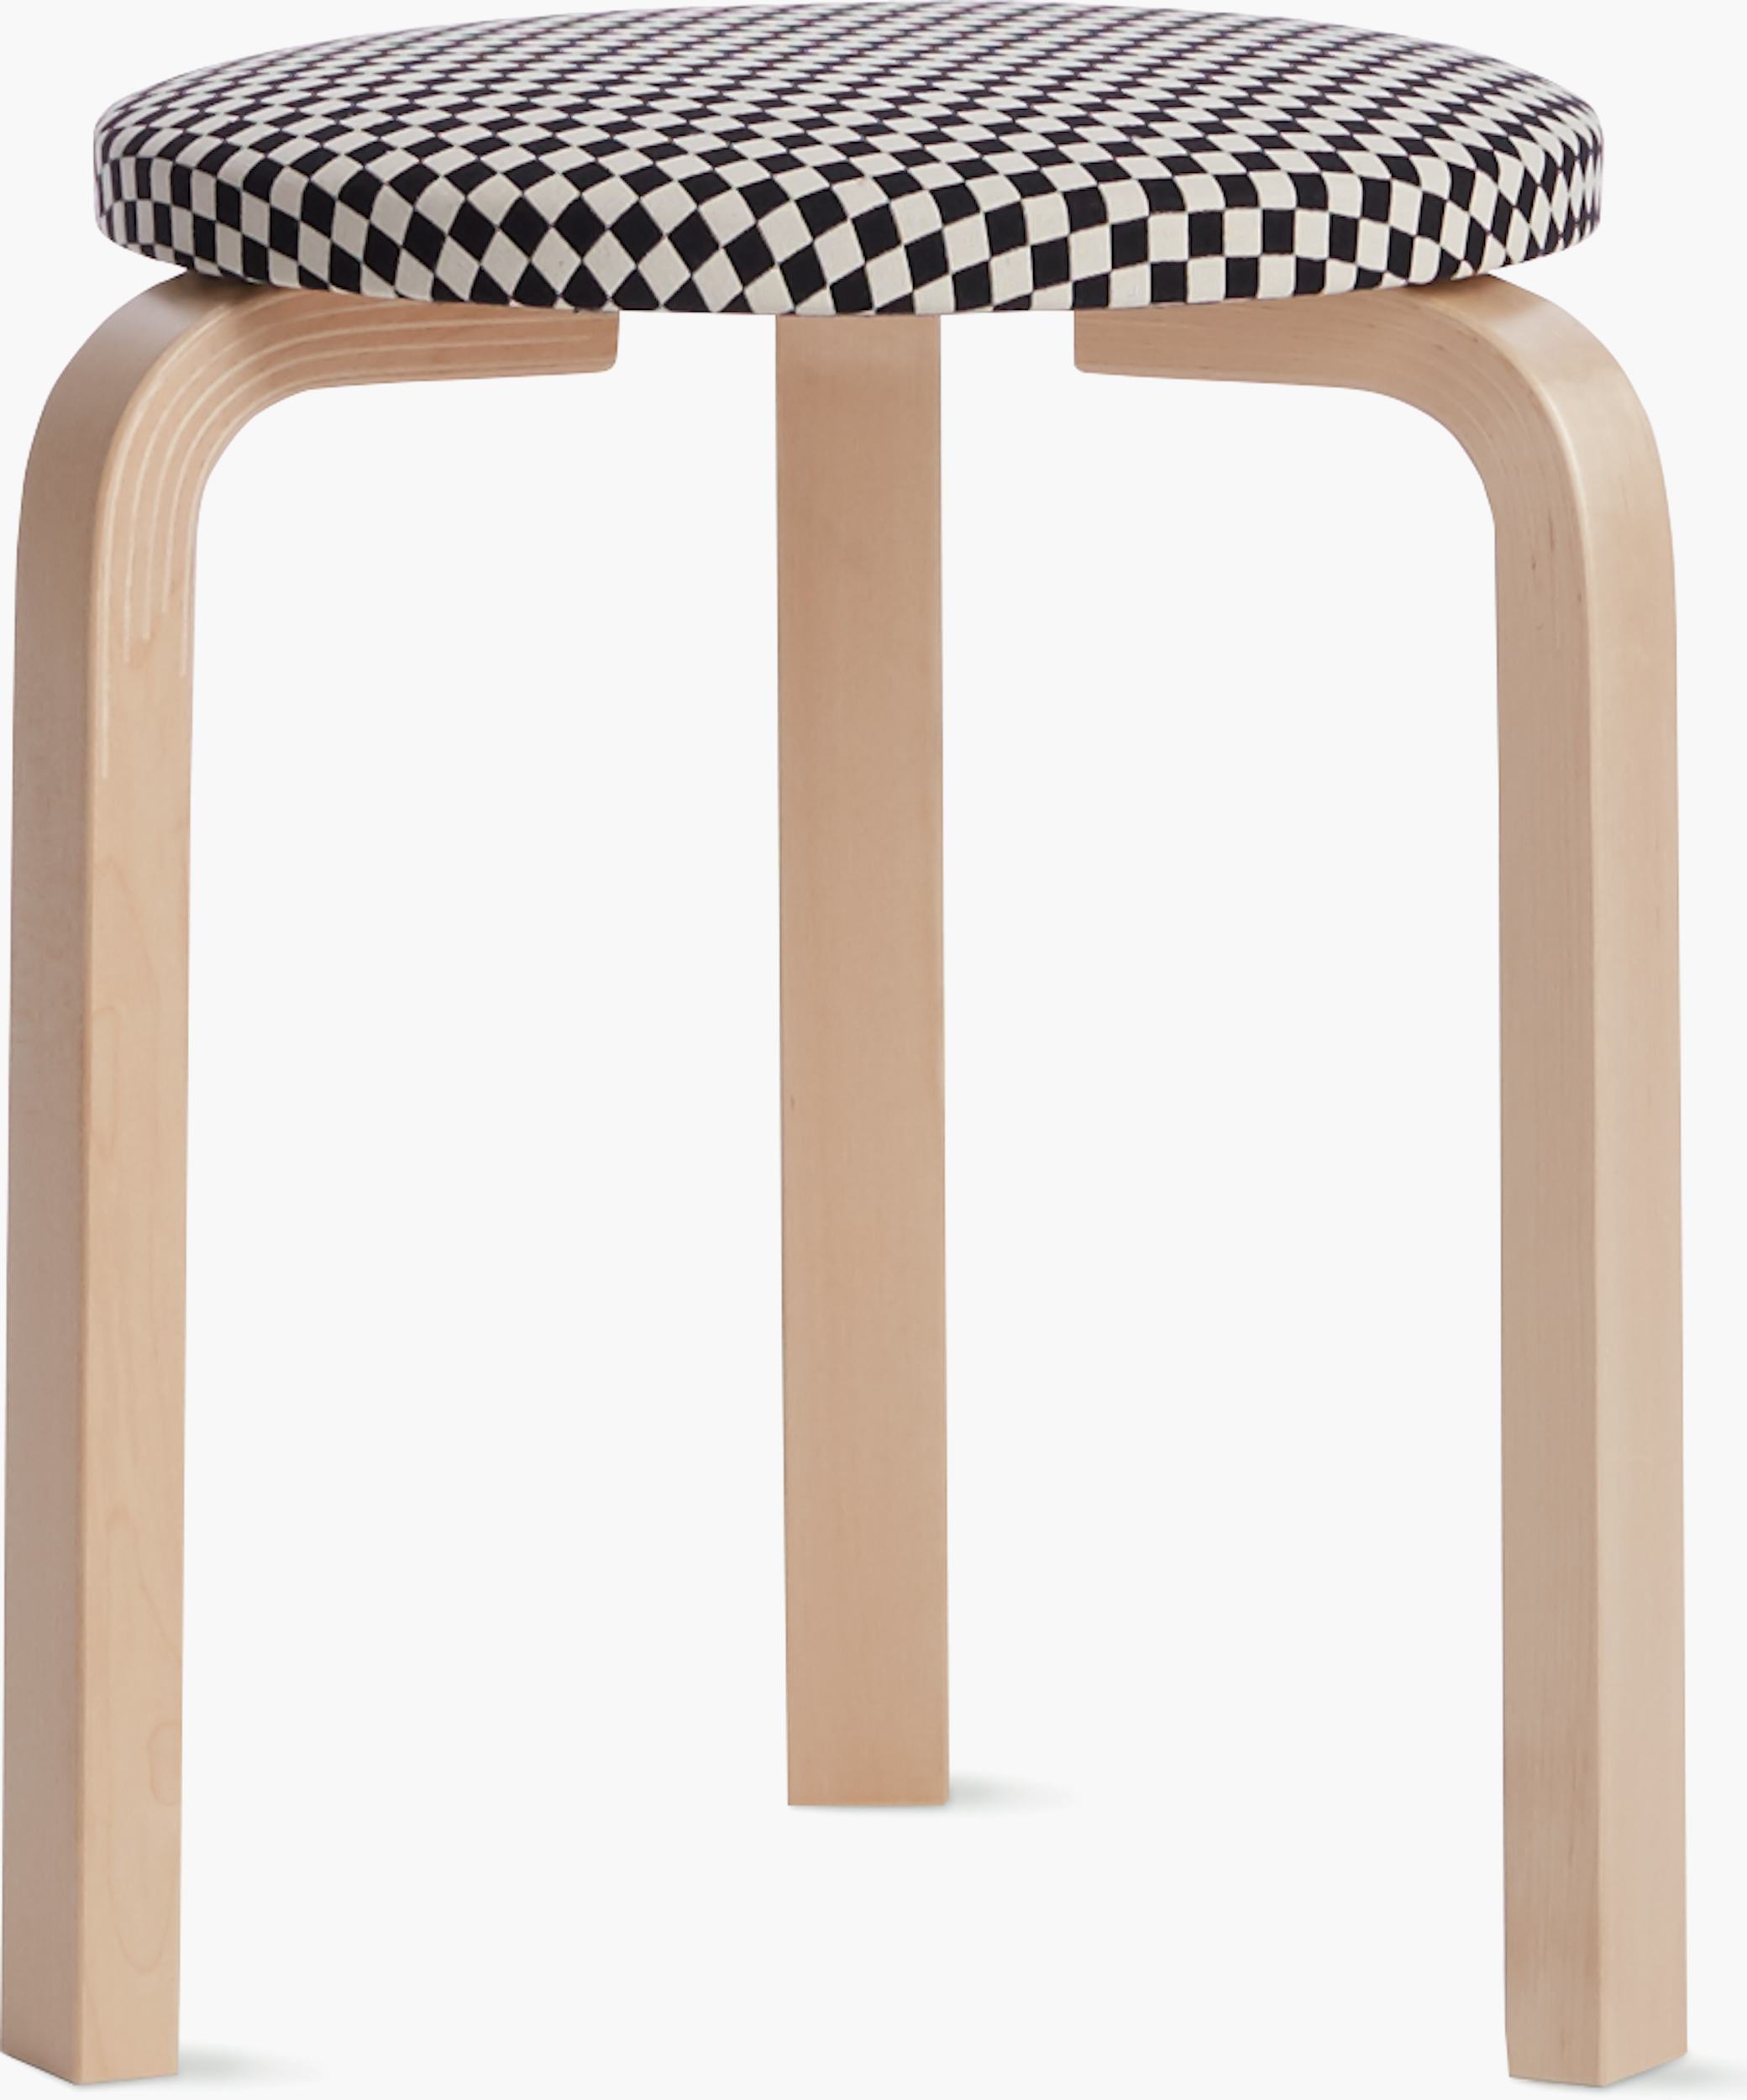 artek aalto stool 60 / checker board